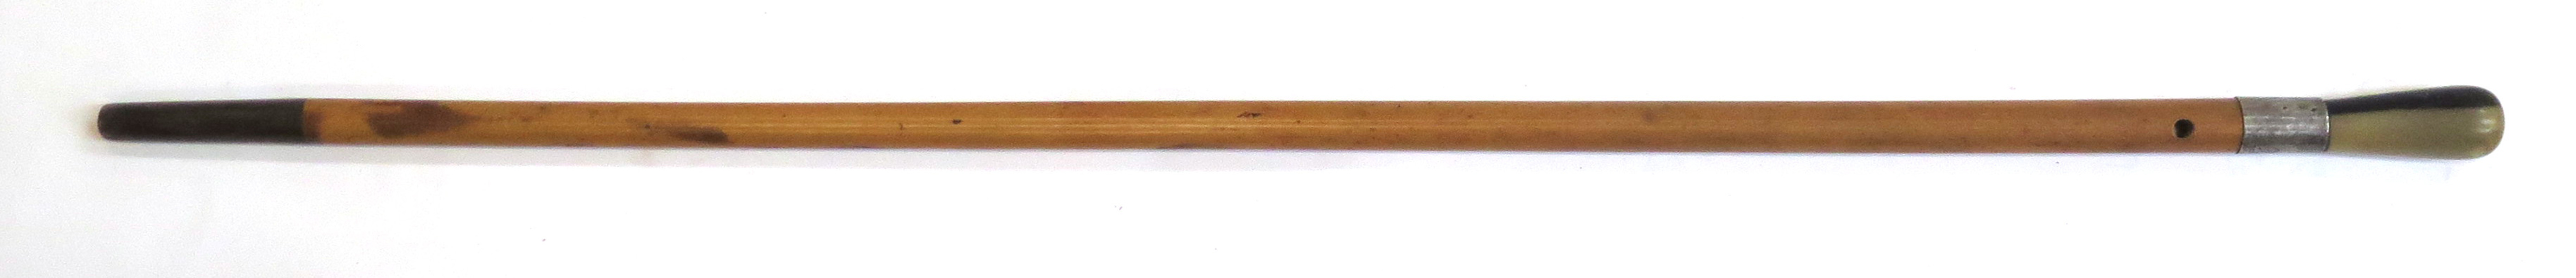 Käpp, bambu och horn med silverbeslag, 1900-talets 1 hälft, _15603a_lg.jpeg